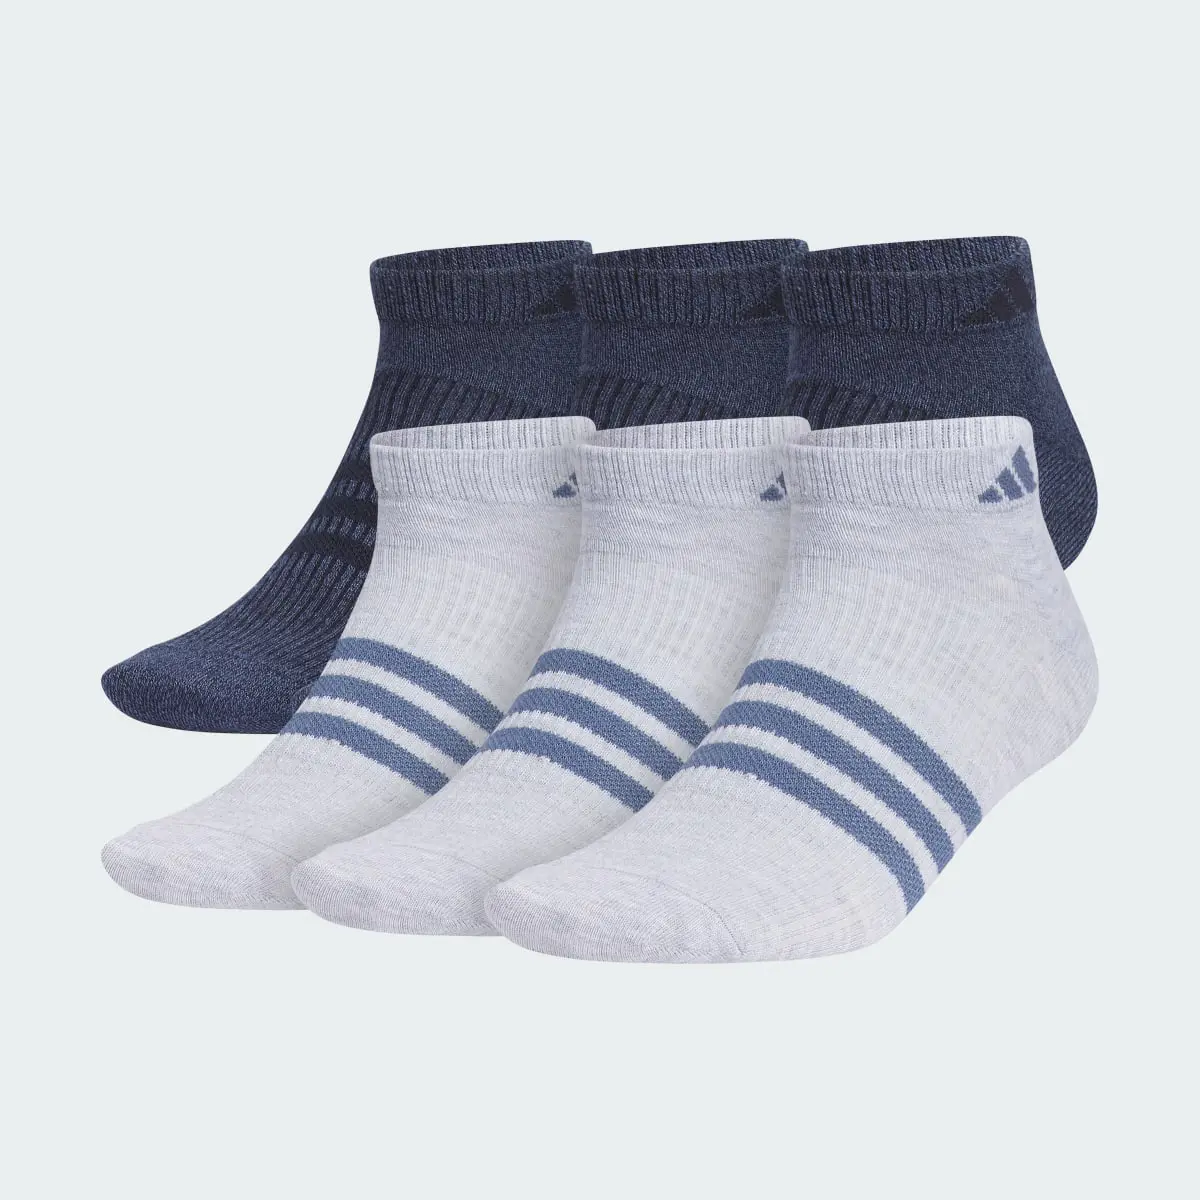 Adidas Superlite 3.0 6-Pack Low-Cut Socks. 2